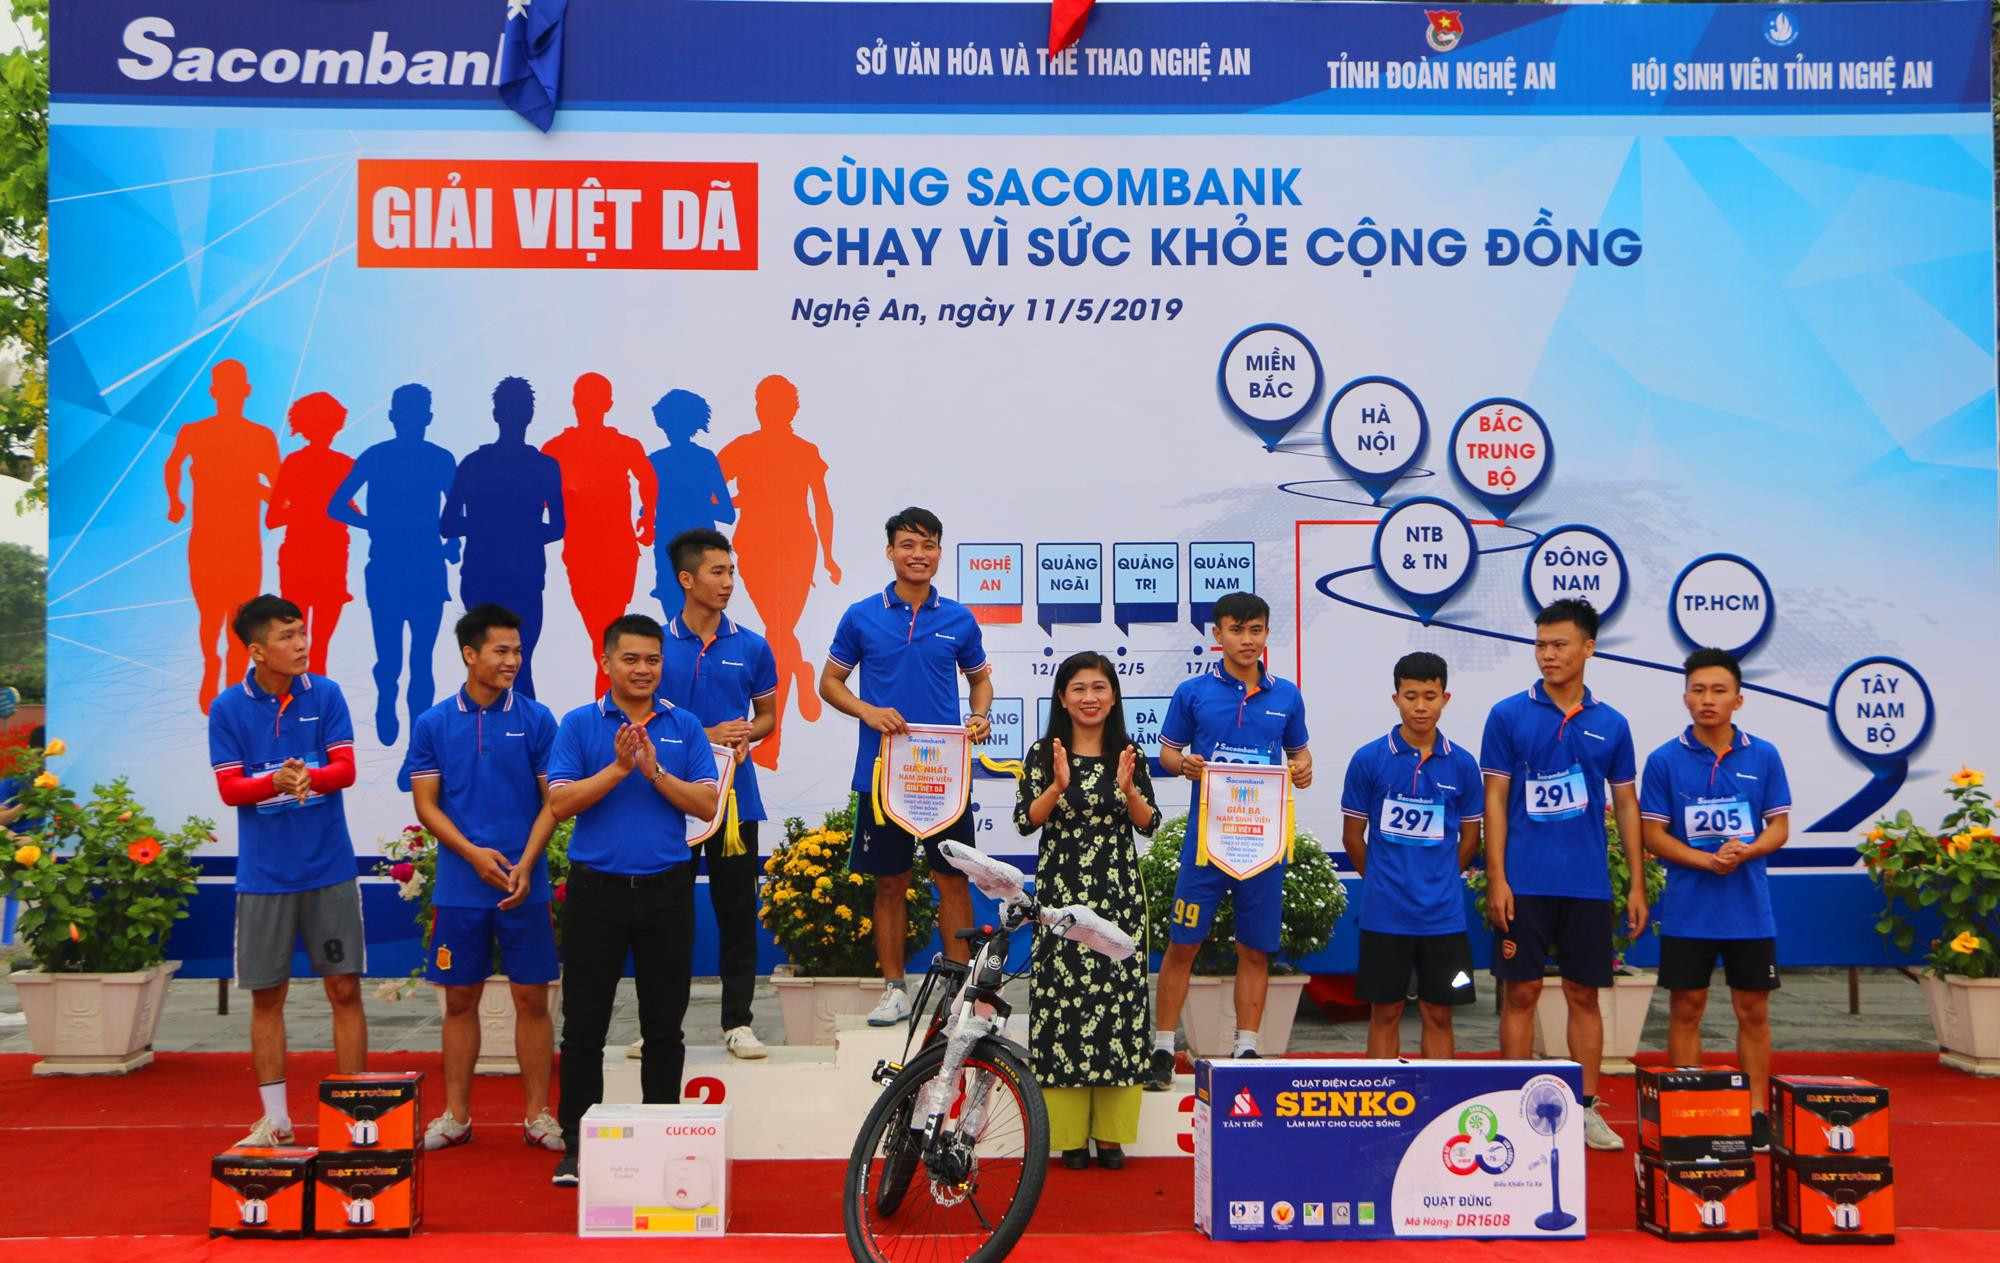 Ban tổ chức trao giải Nhất, Nhì, Ba và các phần thưởng cho Vận động viên đạt thành tích cao tại cự ly 1.000 m dành cho nam sinh viên các Trường ĐH, CĐ. Ảnh: Nguyễn Hải